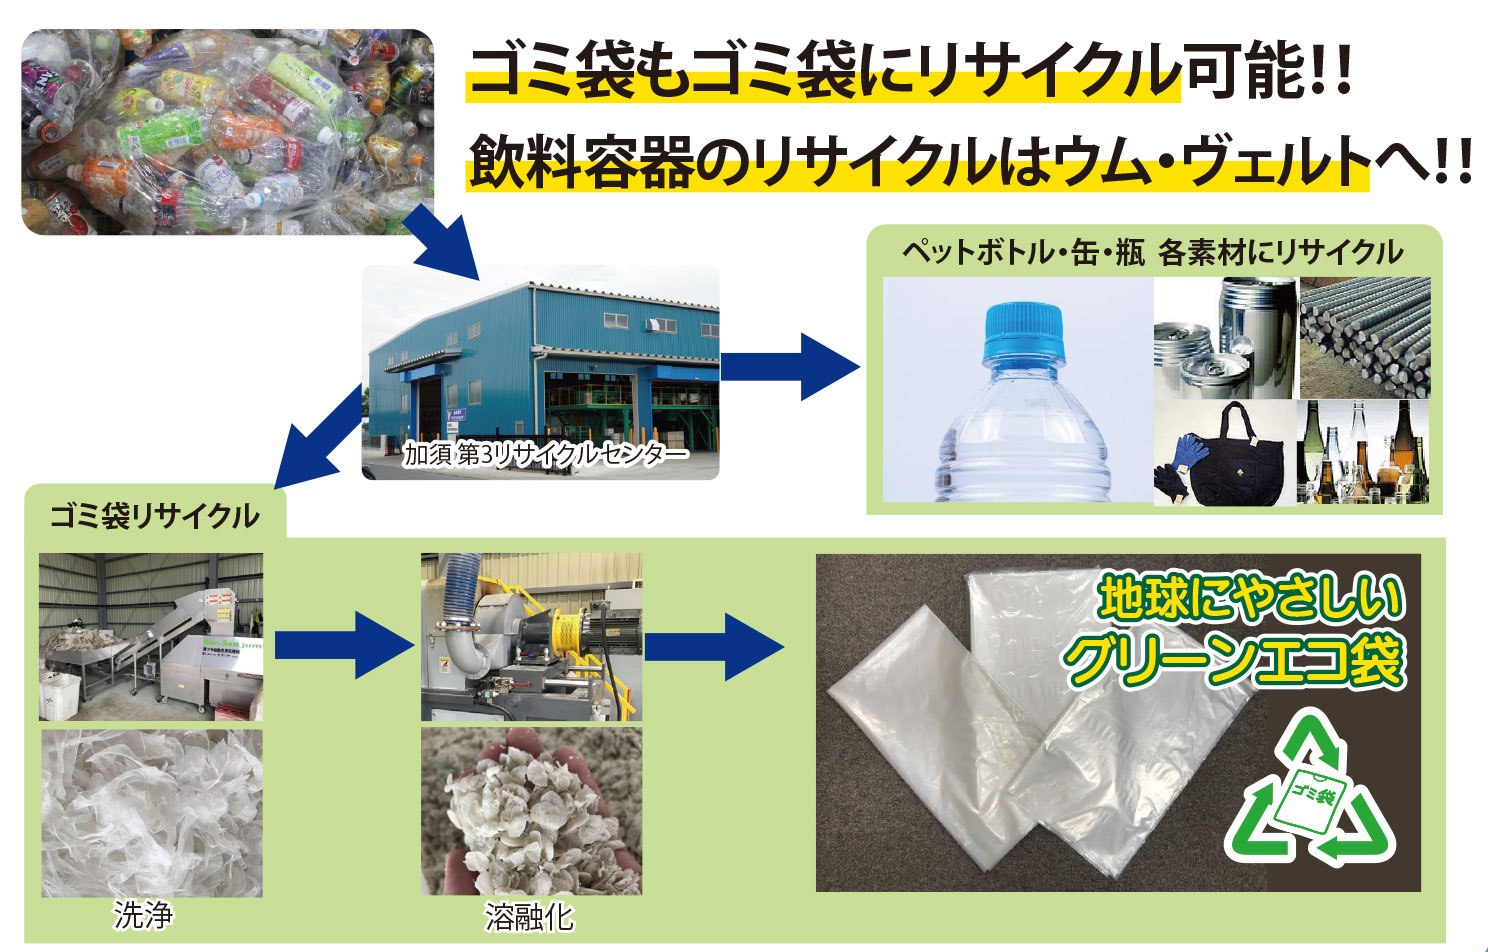 ごみ袋もごみ袋にリサイクル可能！
飲料容器のリサイクルはウム・ヴェルトへ！